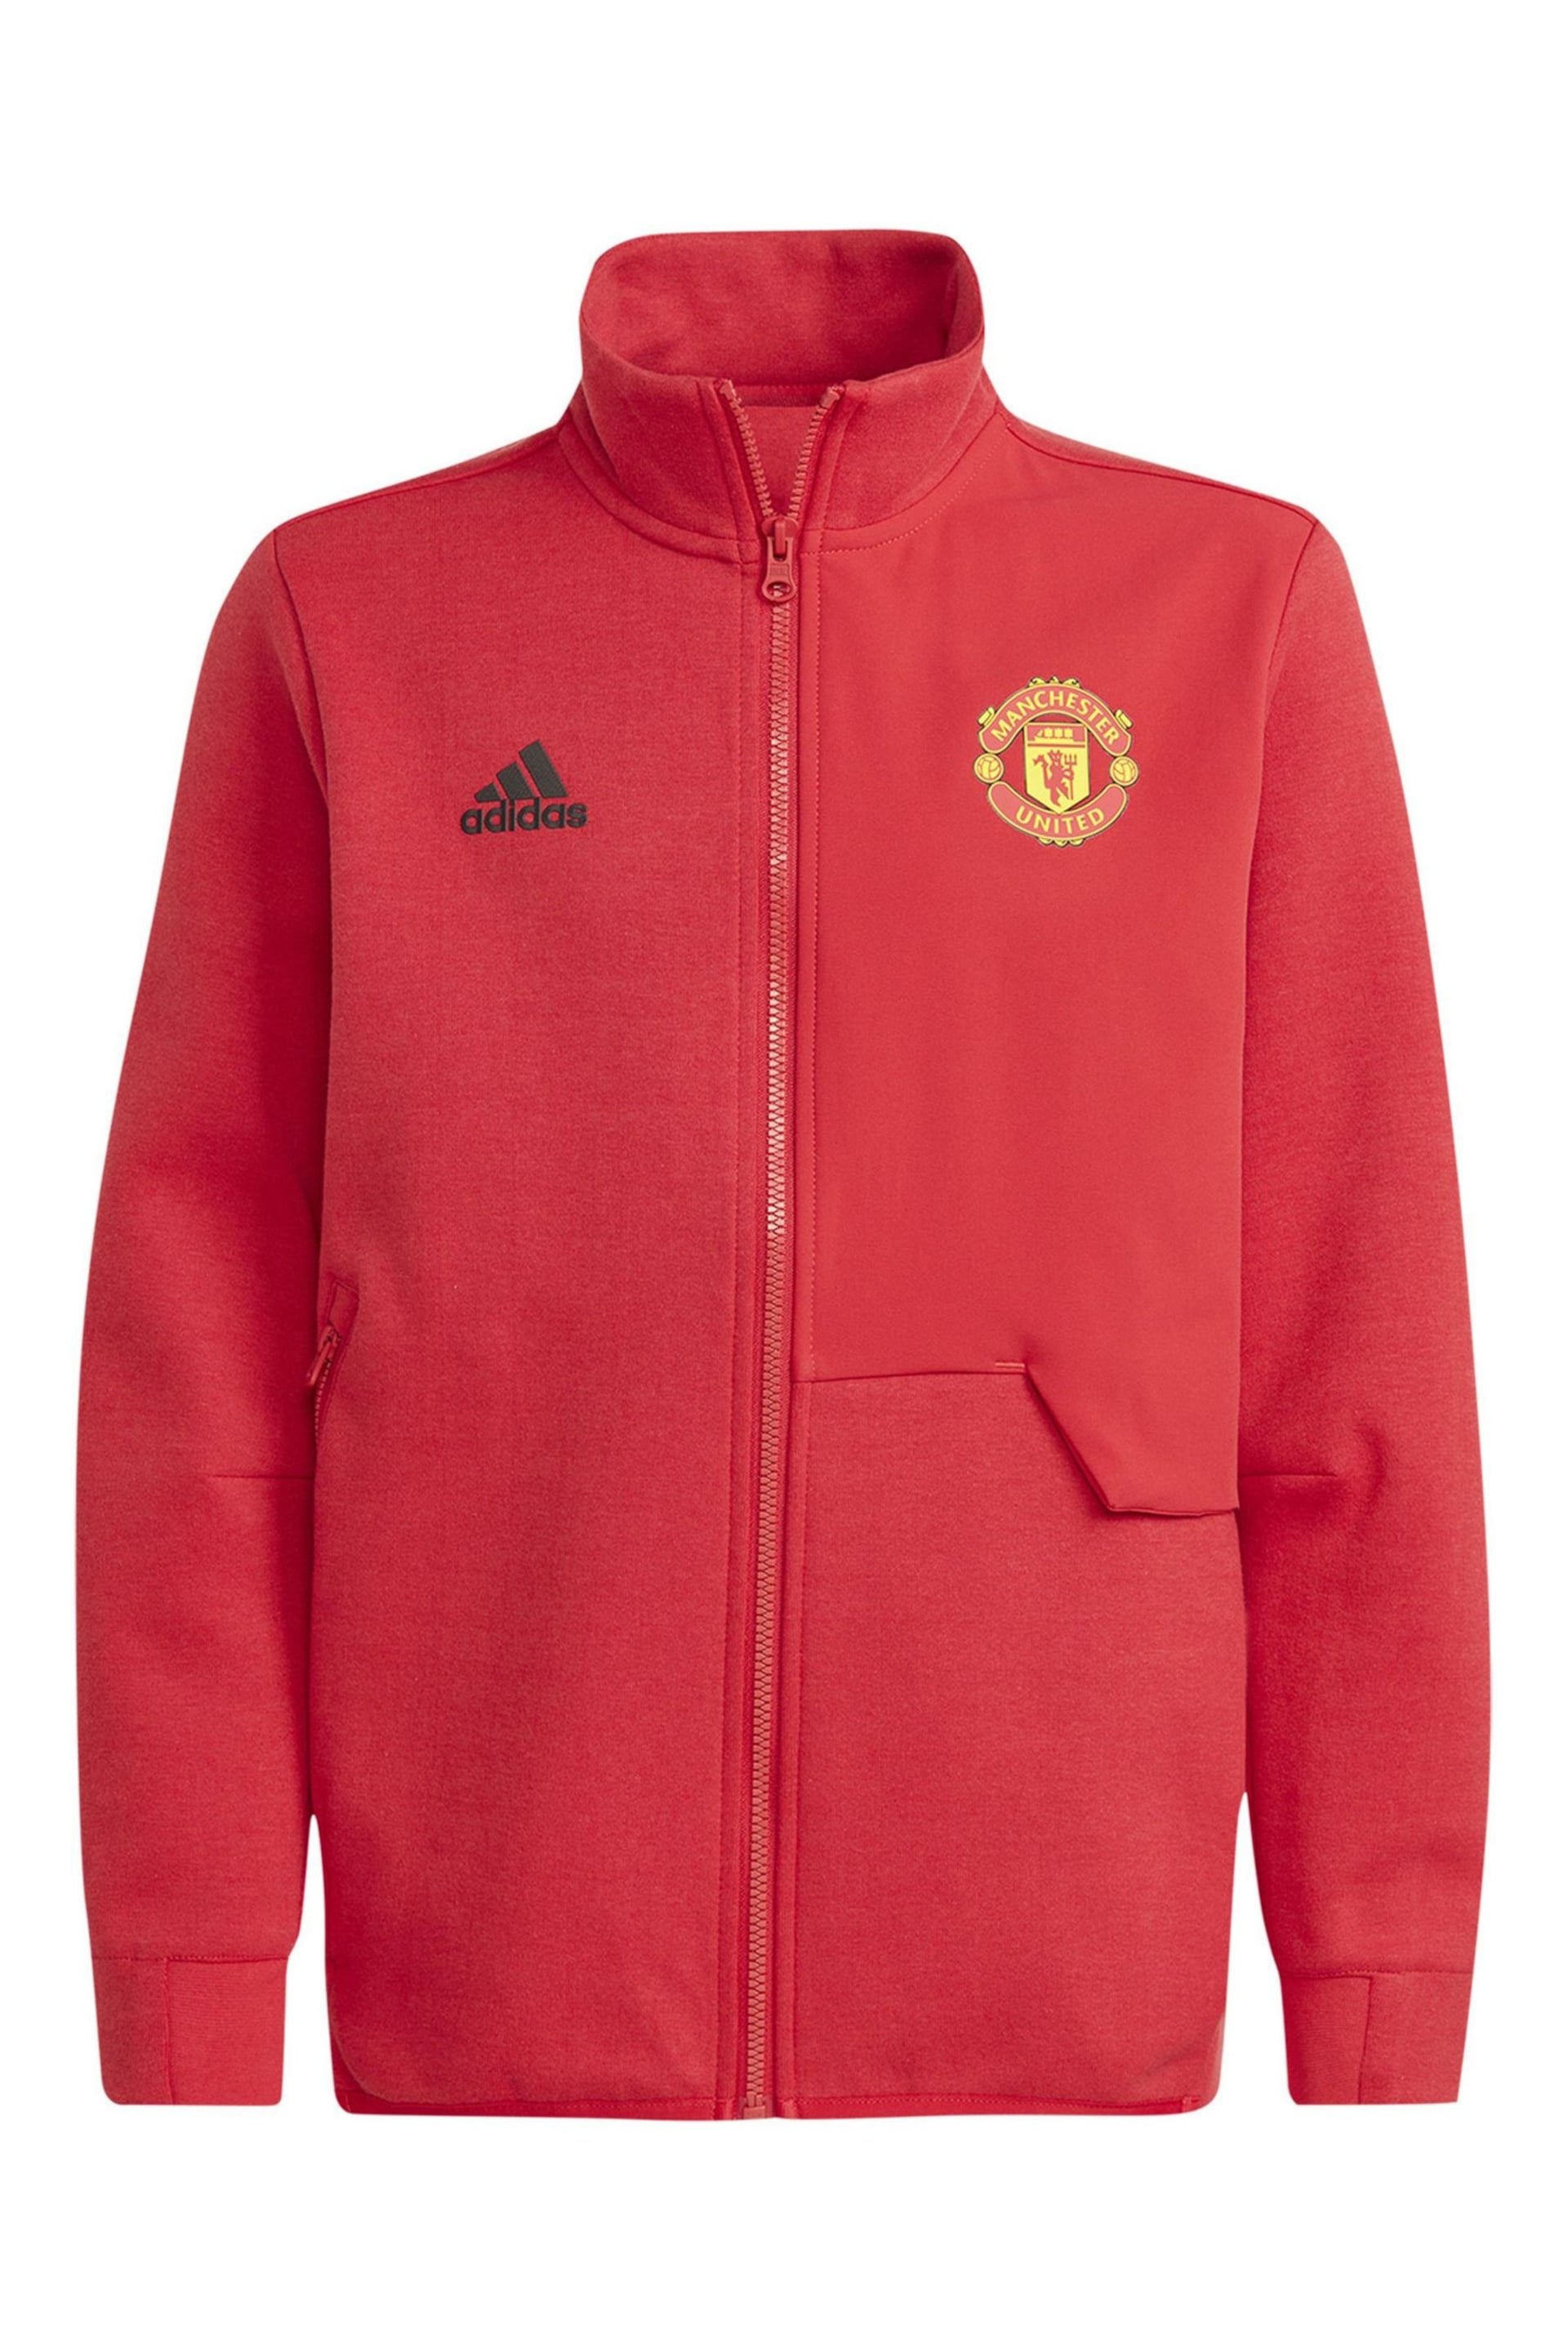 adidas Red Manchester United Anthem Jacket - Image 2 of 3